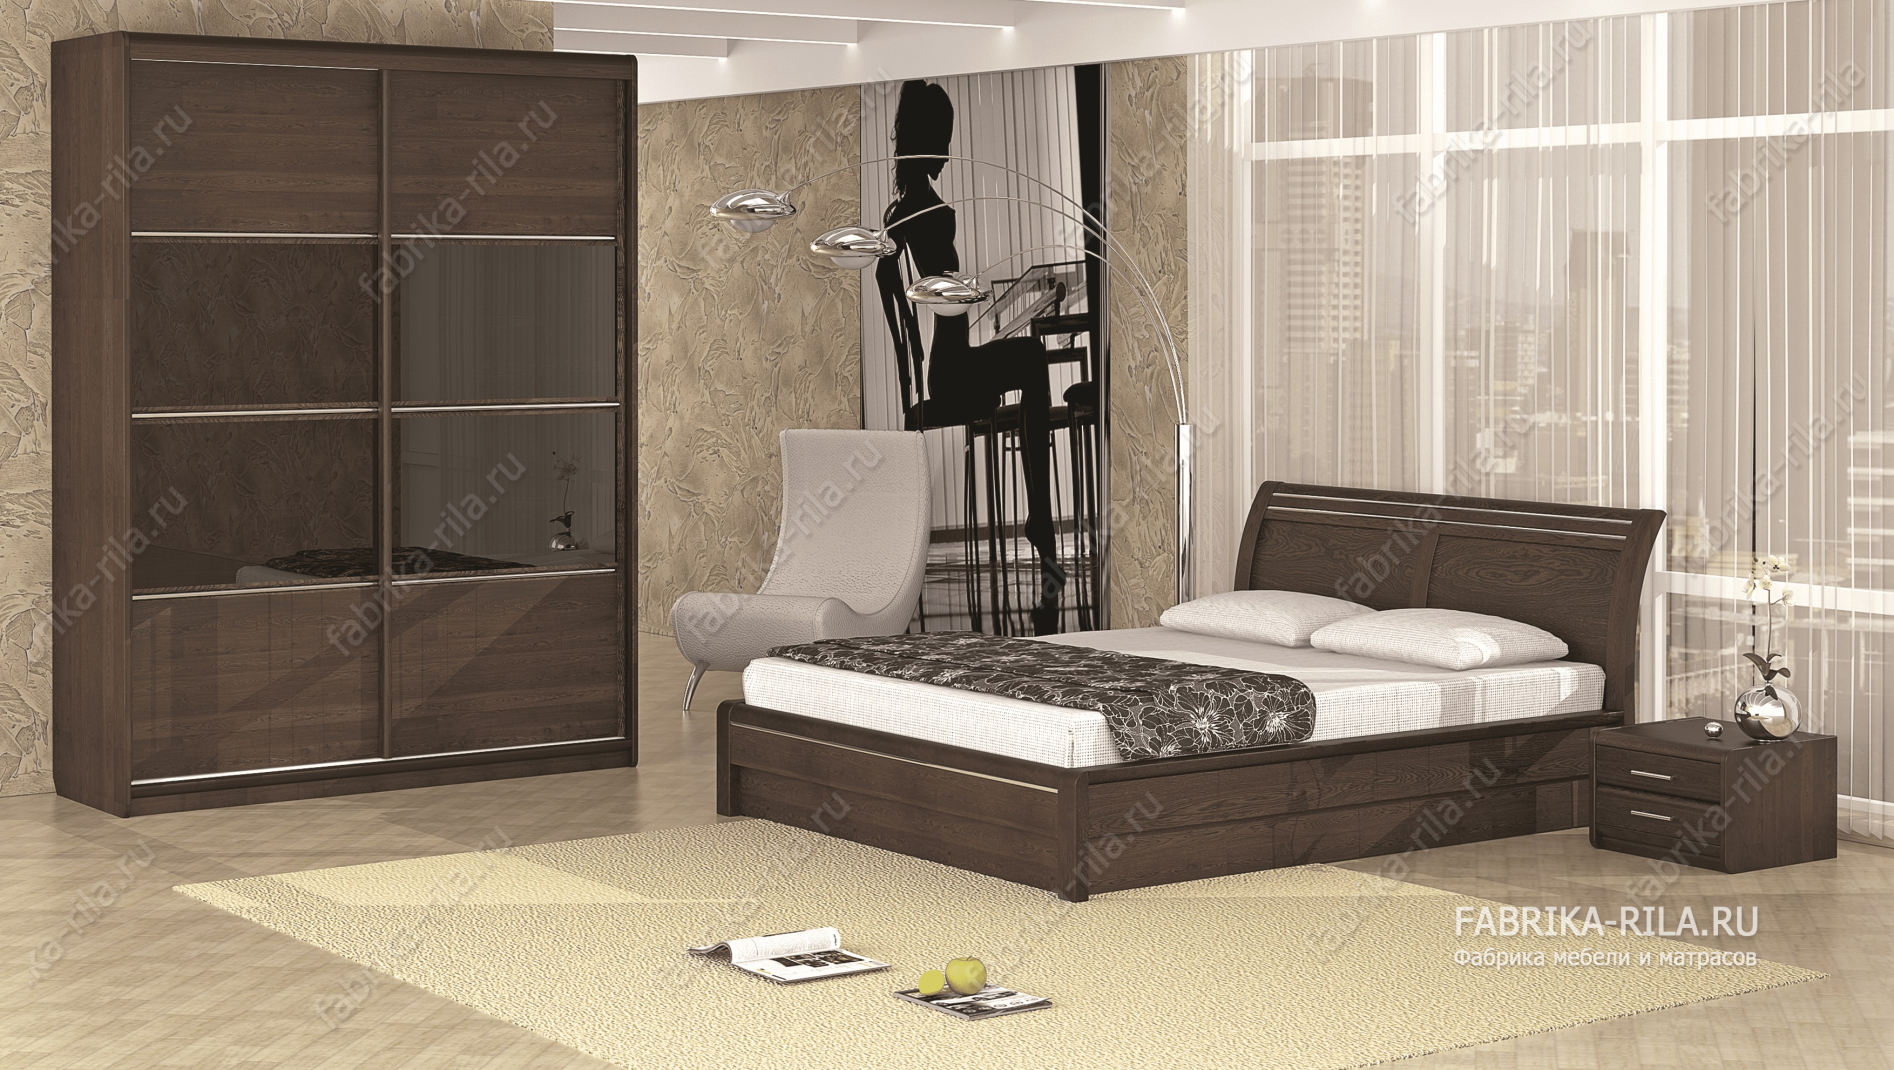 Кровать Okaeri 2 — 200x200 см. из сосны